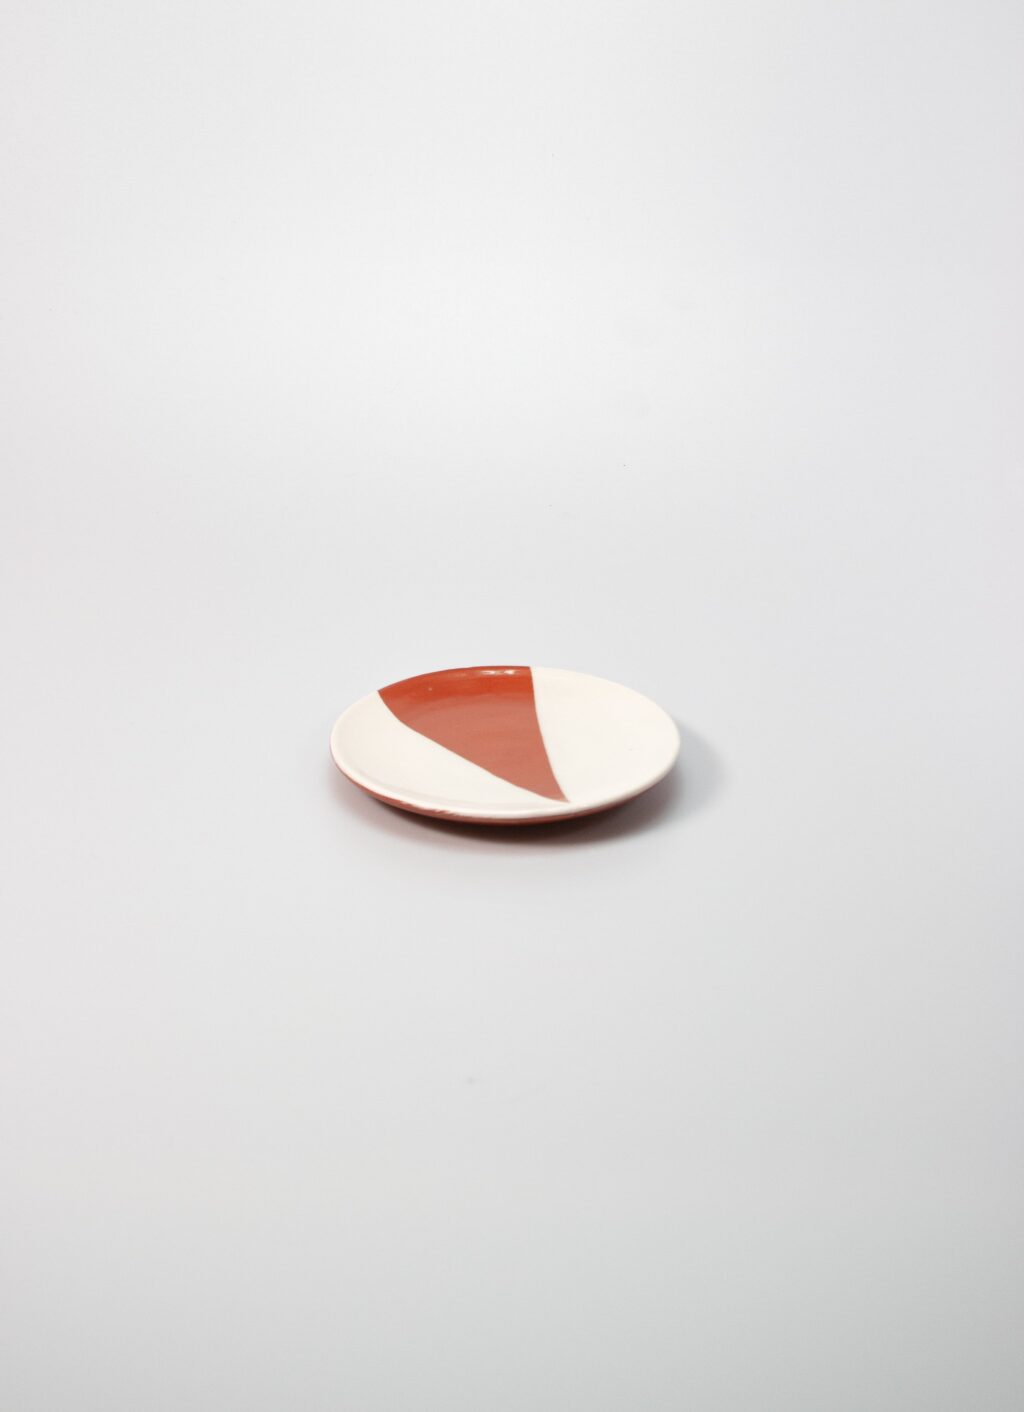 Casa Cubista - Geometric Mini Plate - Triangle - Terracota and White